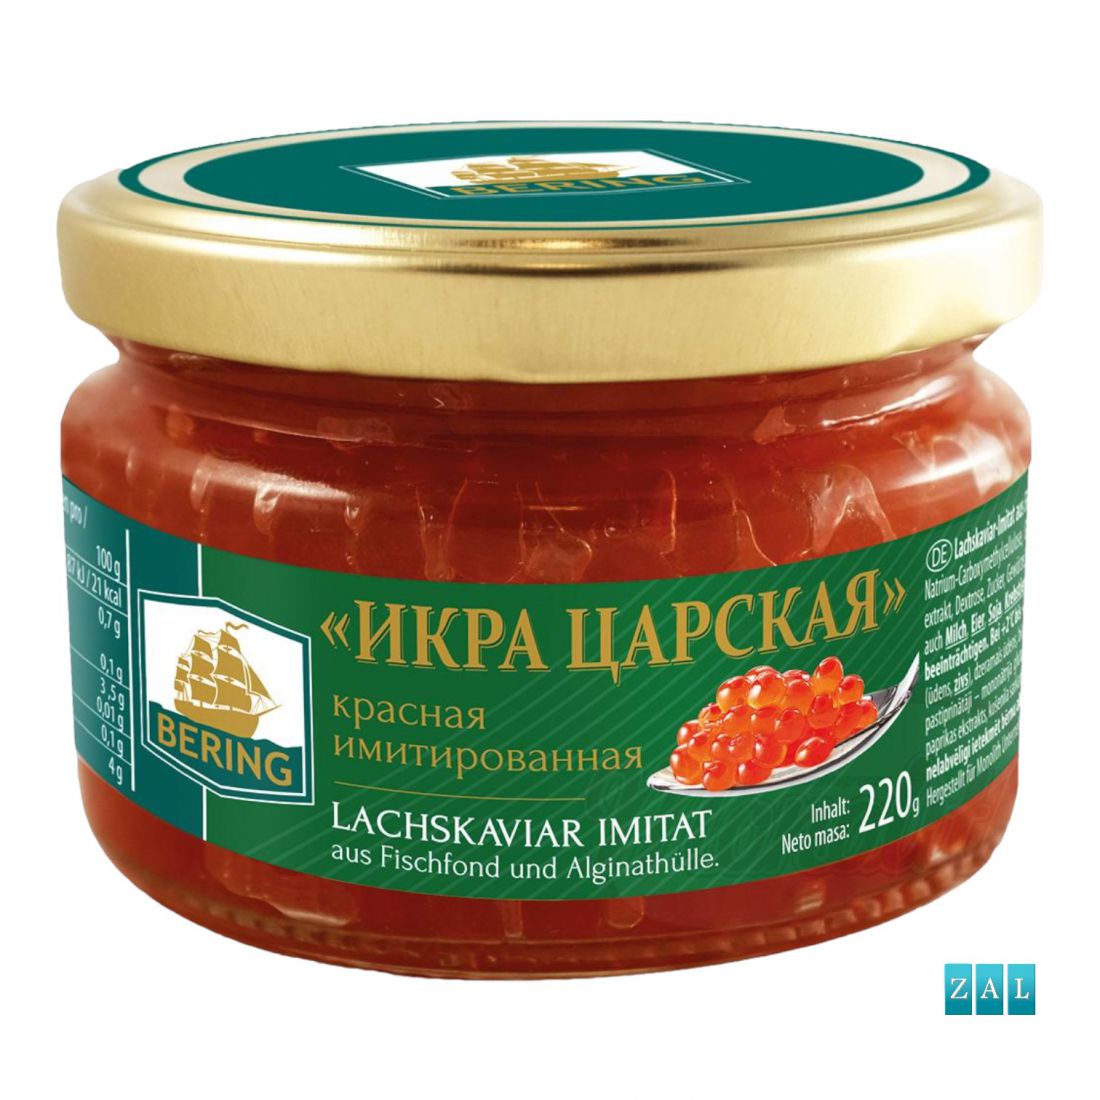 Vörös kaviár ”Tsarskaya kaviár” - imitáció 220g 